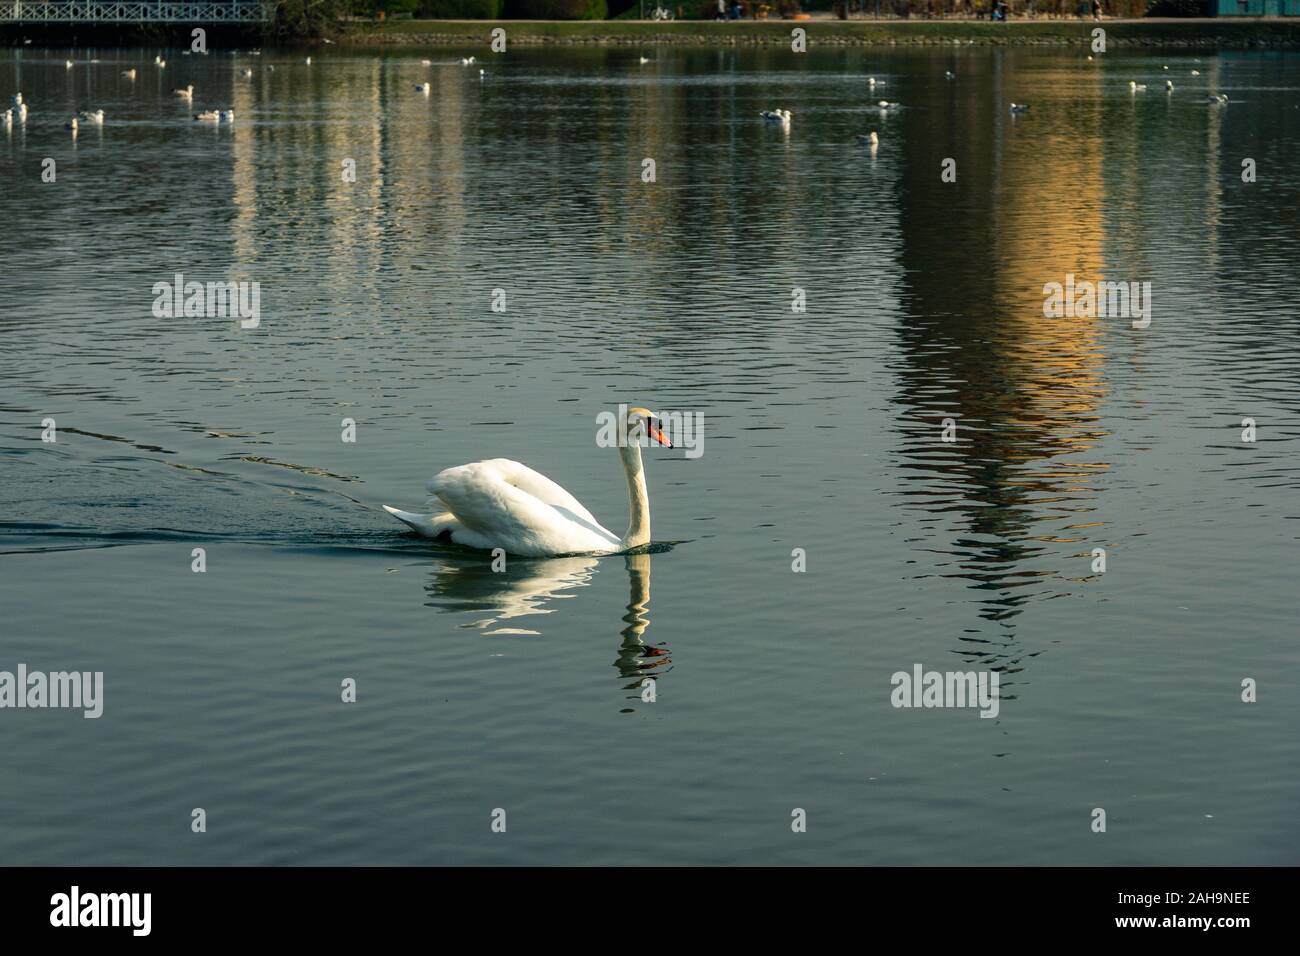 Un cigno è il nuoto nel lago nel parco Pildammsparken a Malmö, in Svezia, in una fredda giornata di primavera Foto Stock